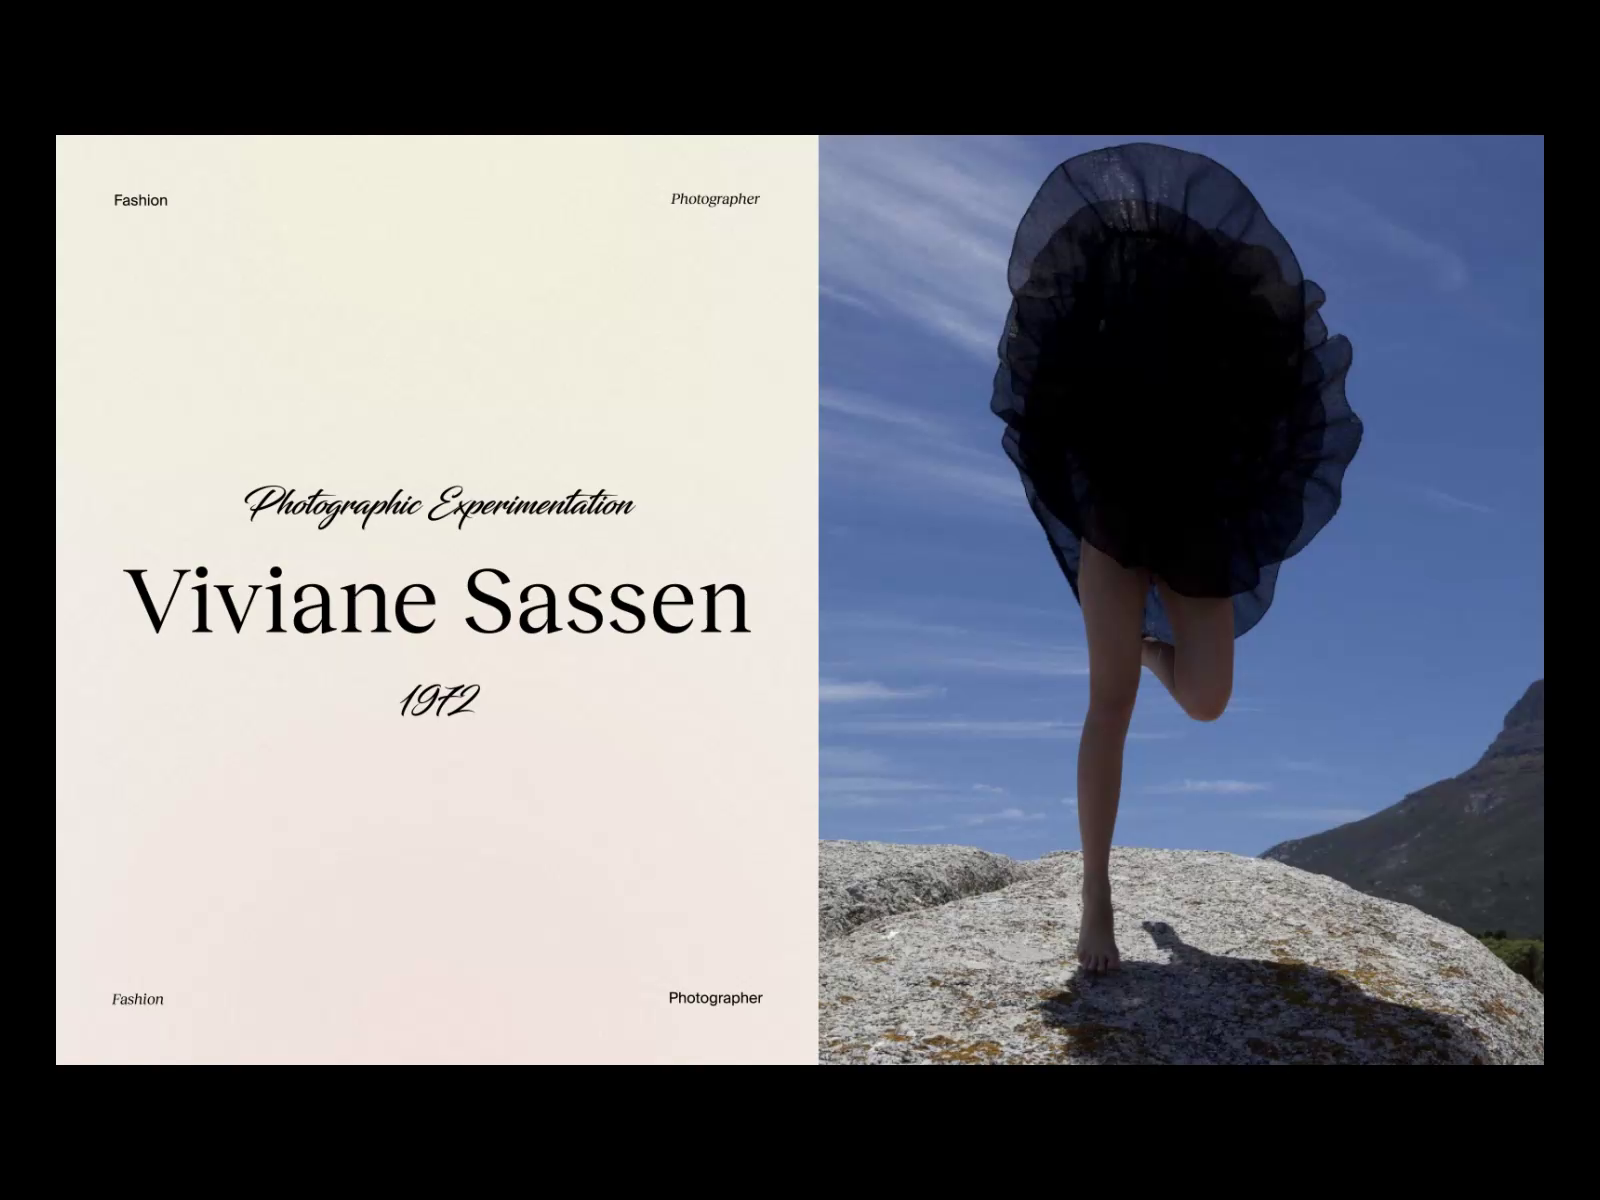 Fashion photographer : Viviane Sassen